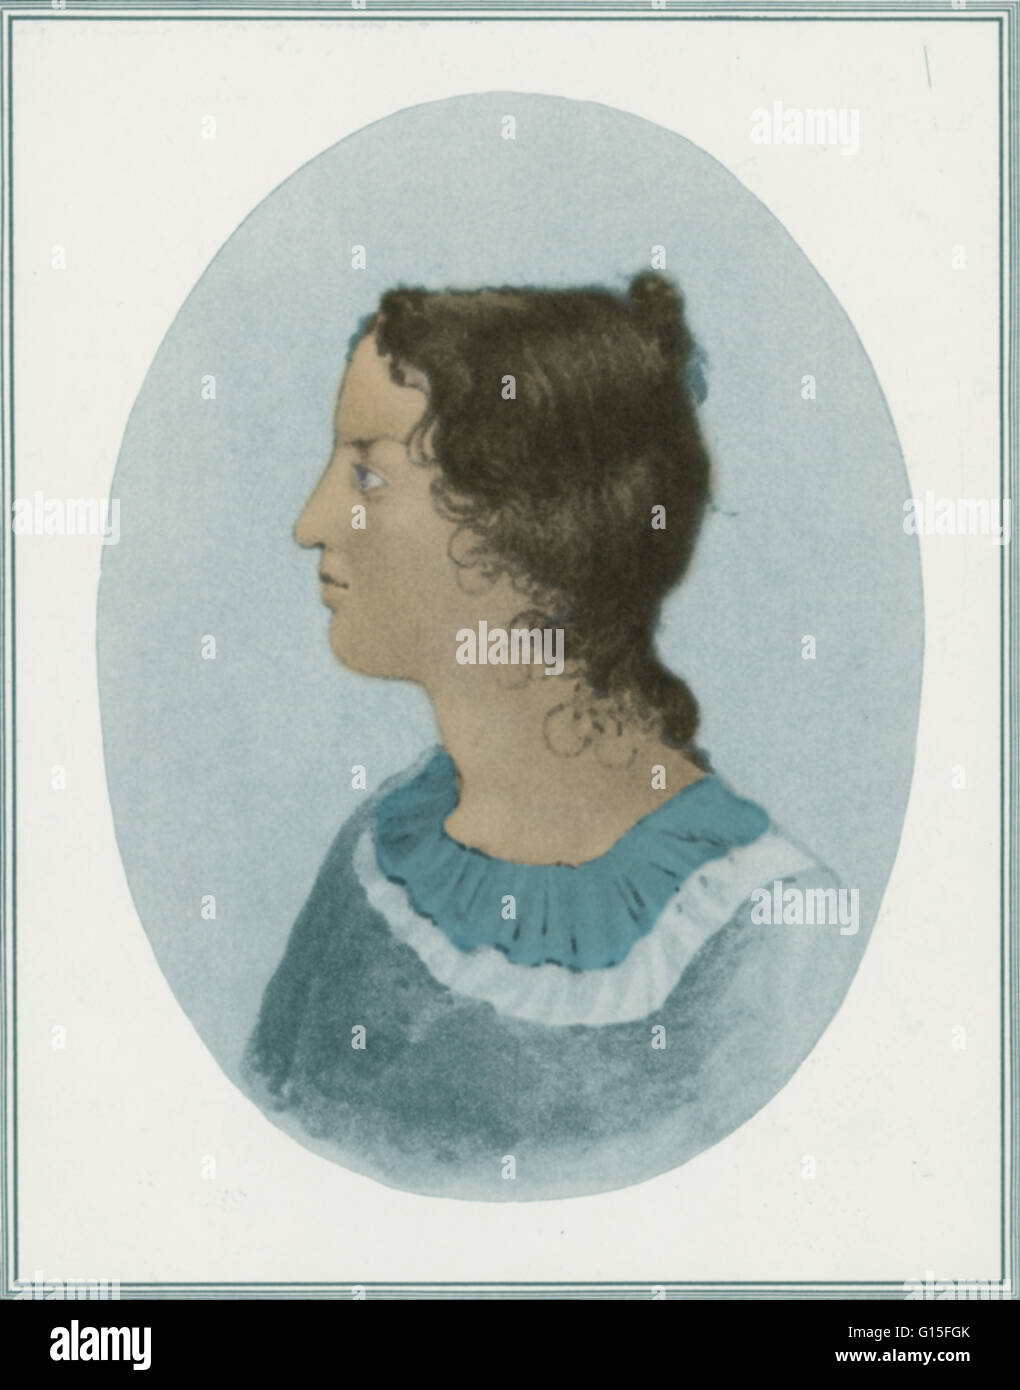 Emily Jane Bronte (1818-1848). Ein englischer Schriftsteller und Dichter, jetzt am besten für ihren Roman Wuthering Heights in Erinnerung. Emily war der zweitälteste der drei Überlebenden Bronte Schwestern zwischen Charlotte und Anne. Sie veröffentlichte unter dem Pseudonym Ellis Bell. Stockfoto